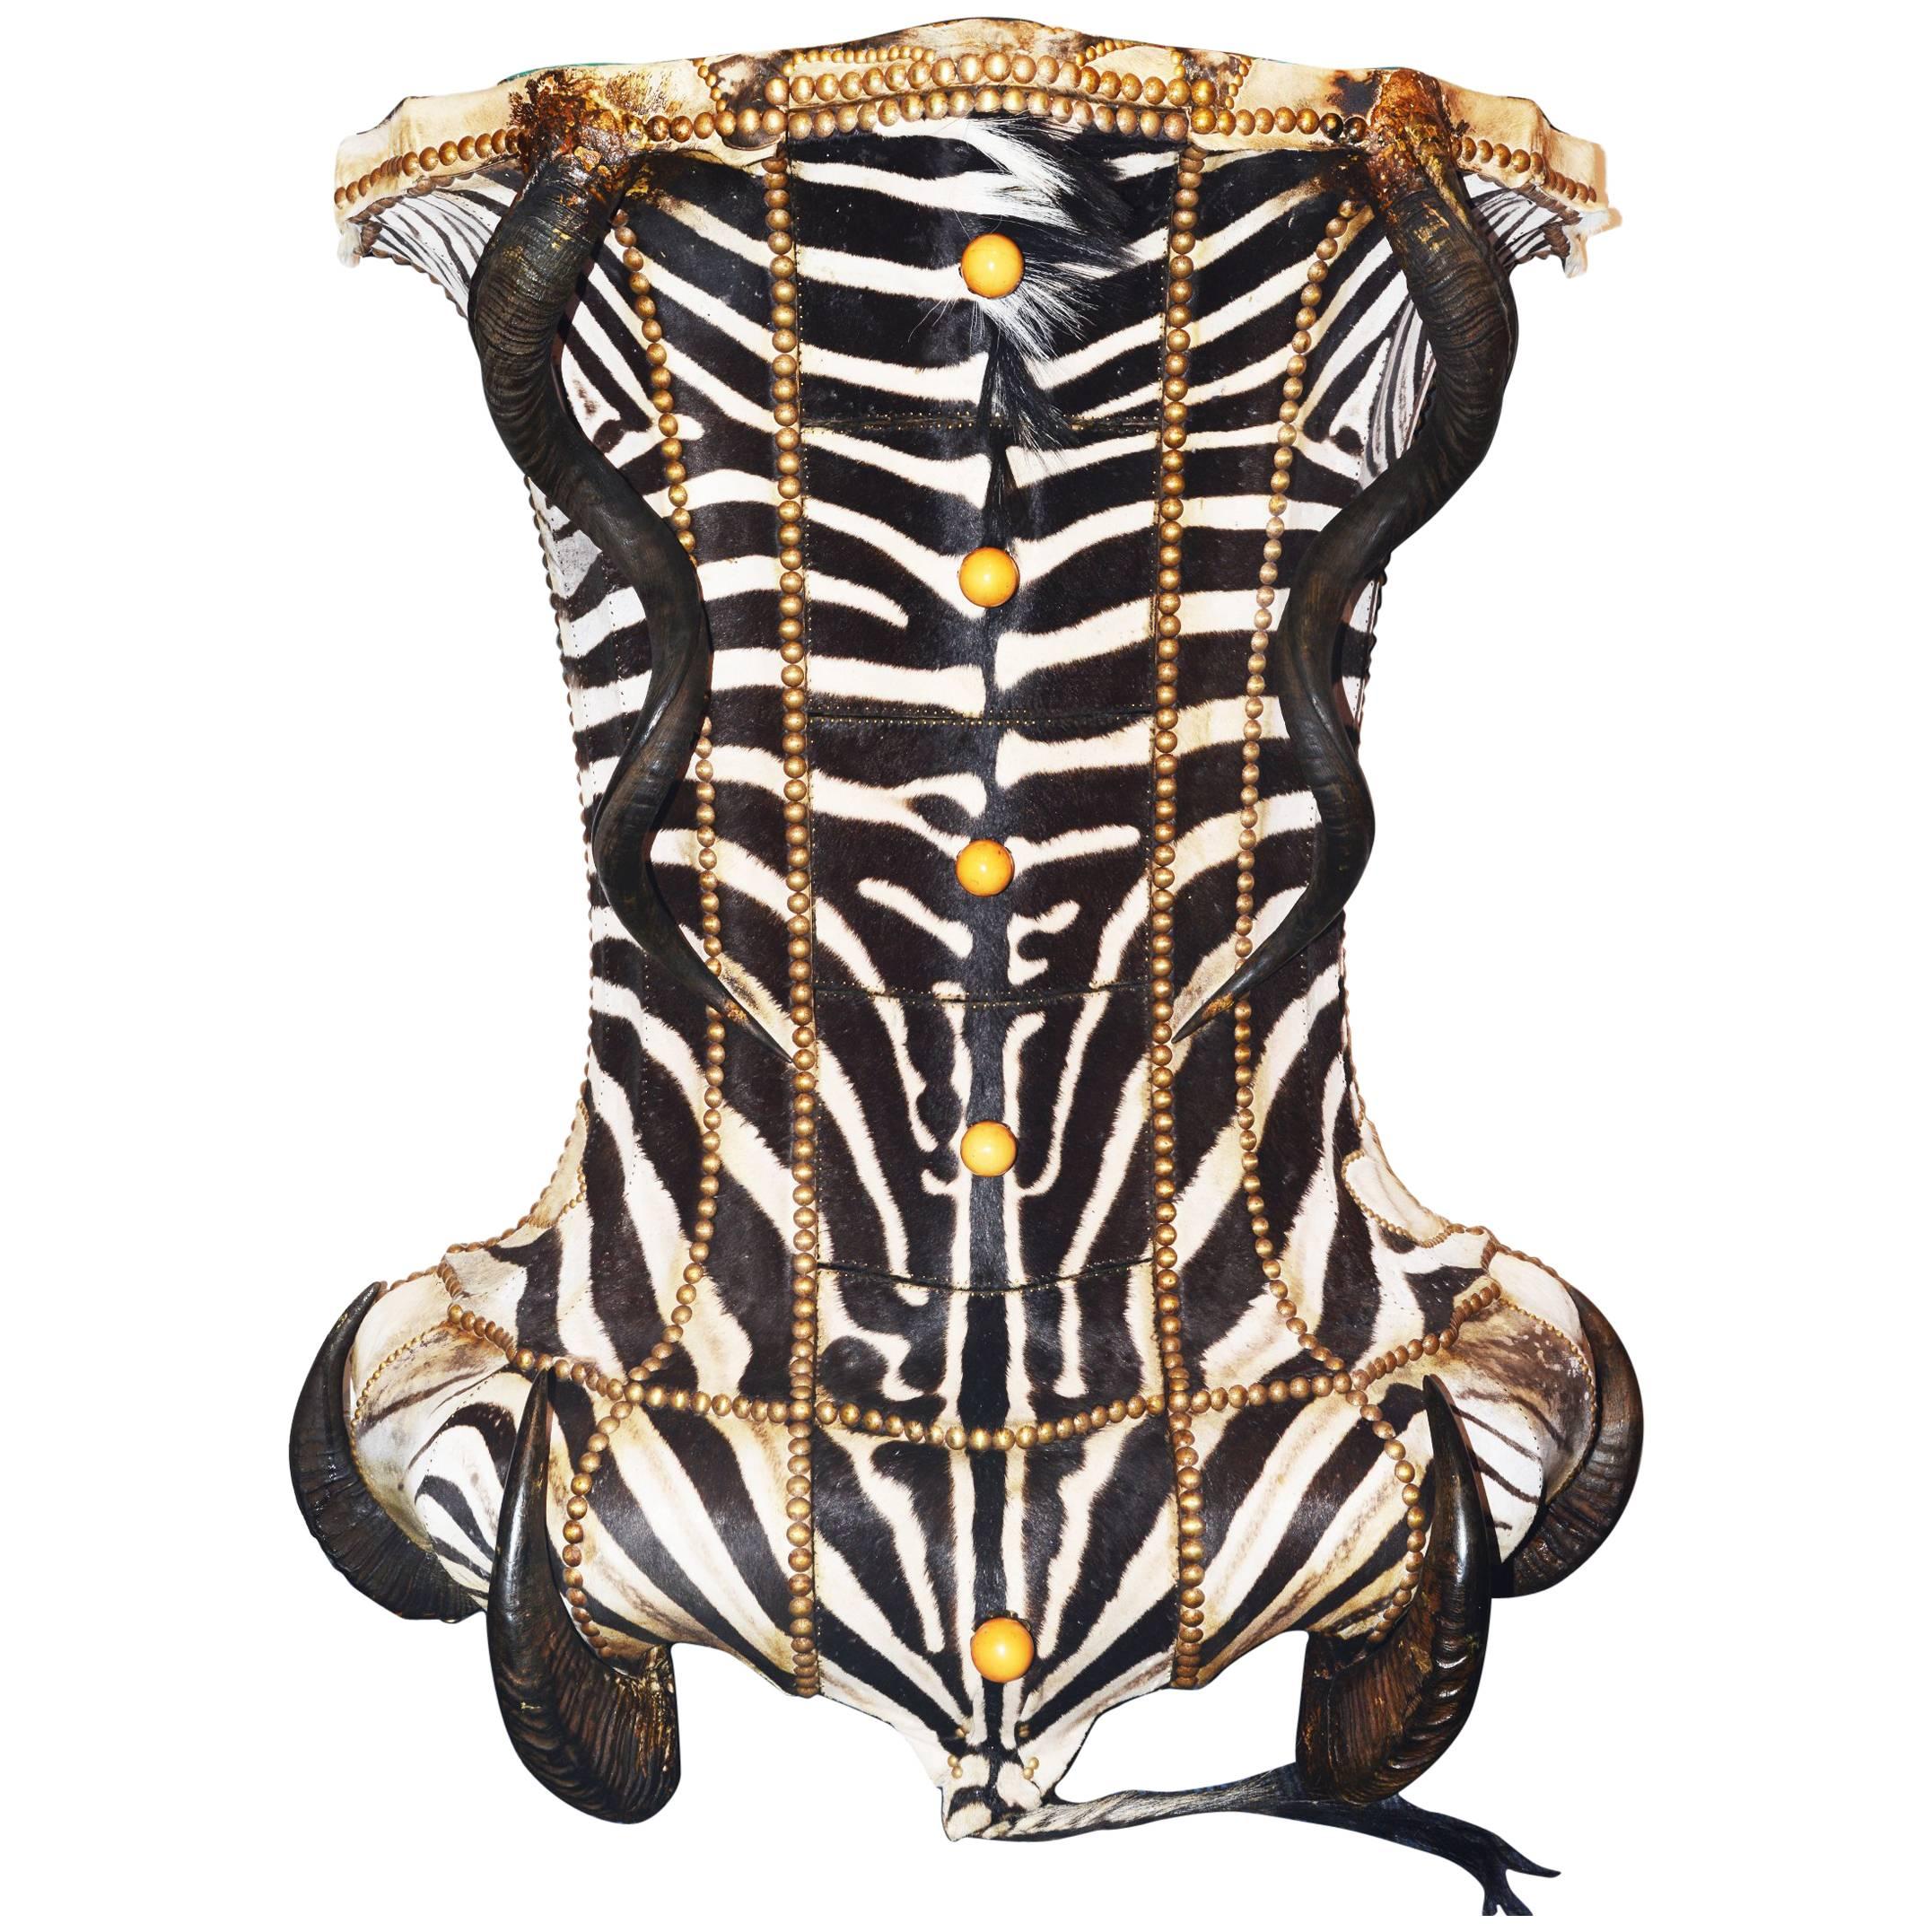 Zebra Head Chest of Drawers with Zebra Skin